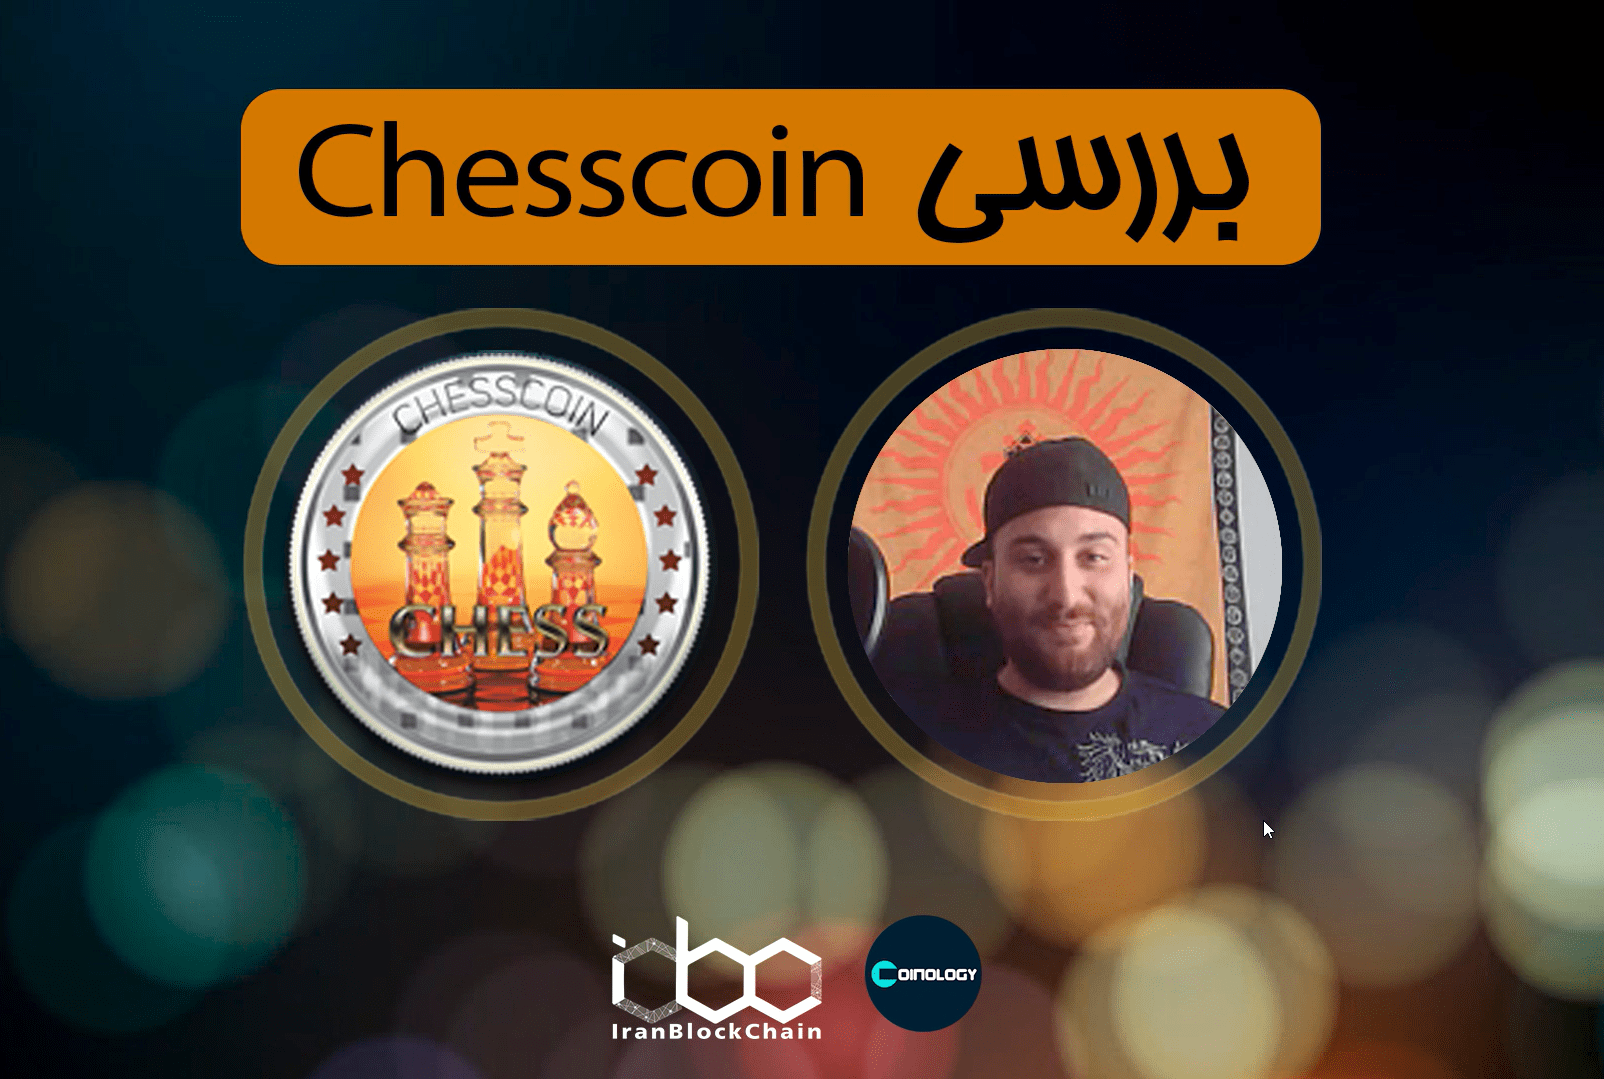 در این قسمت از برنامه کوینولوژی سعی بر معرفی کامل رمز ارز چس کوین - Chess Coin از ایران بلاکچین را داریم.